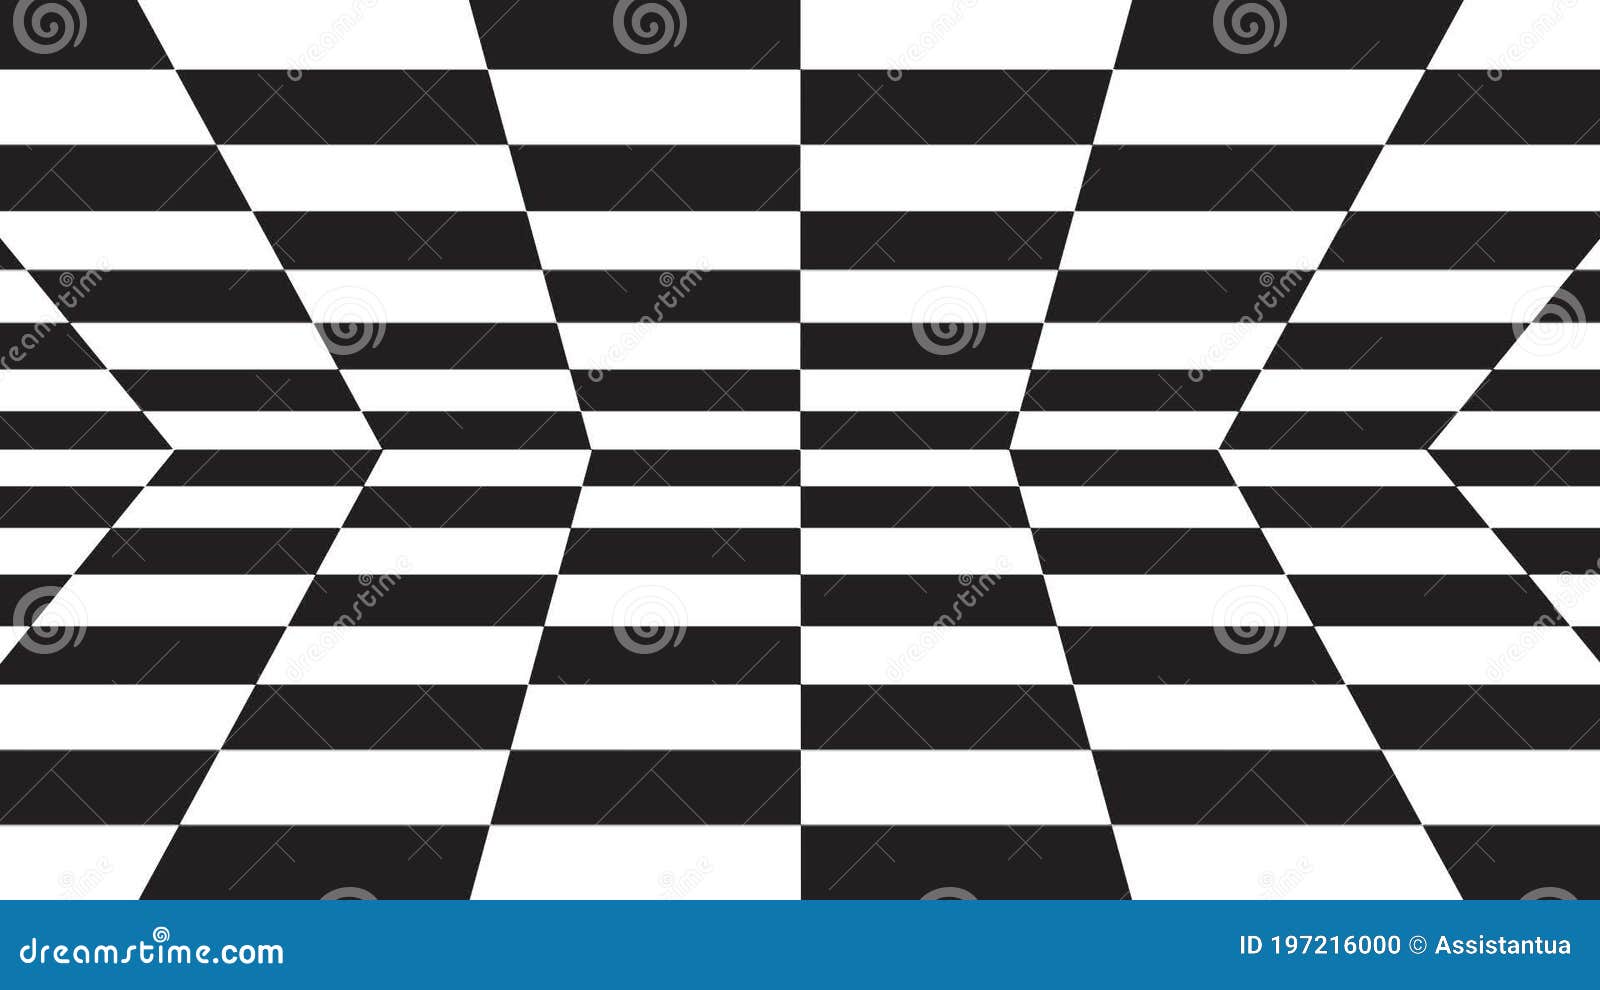 Desenho de linha contínuo da figura do xadrez se movendo na